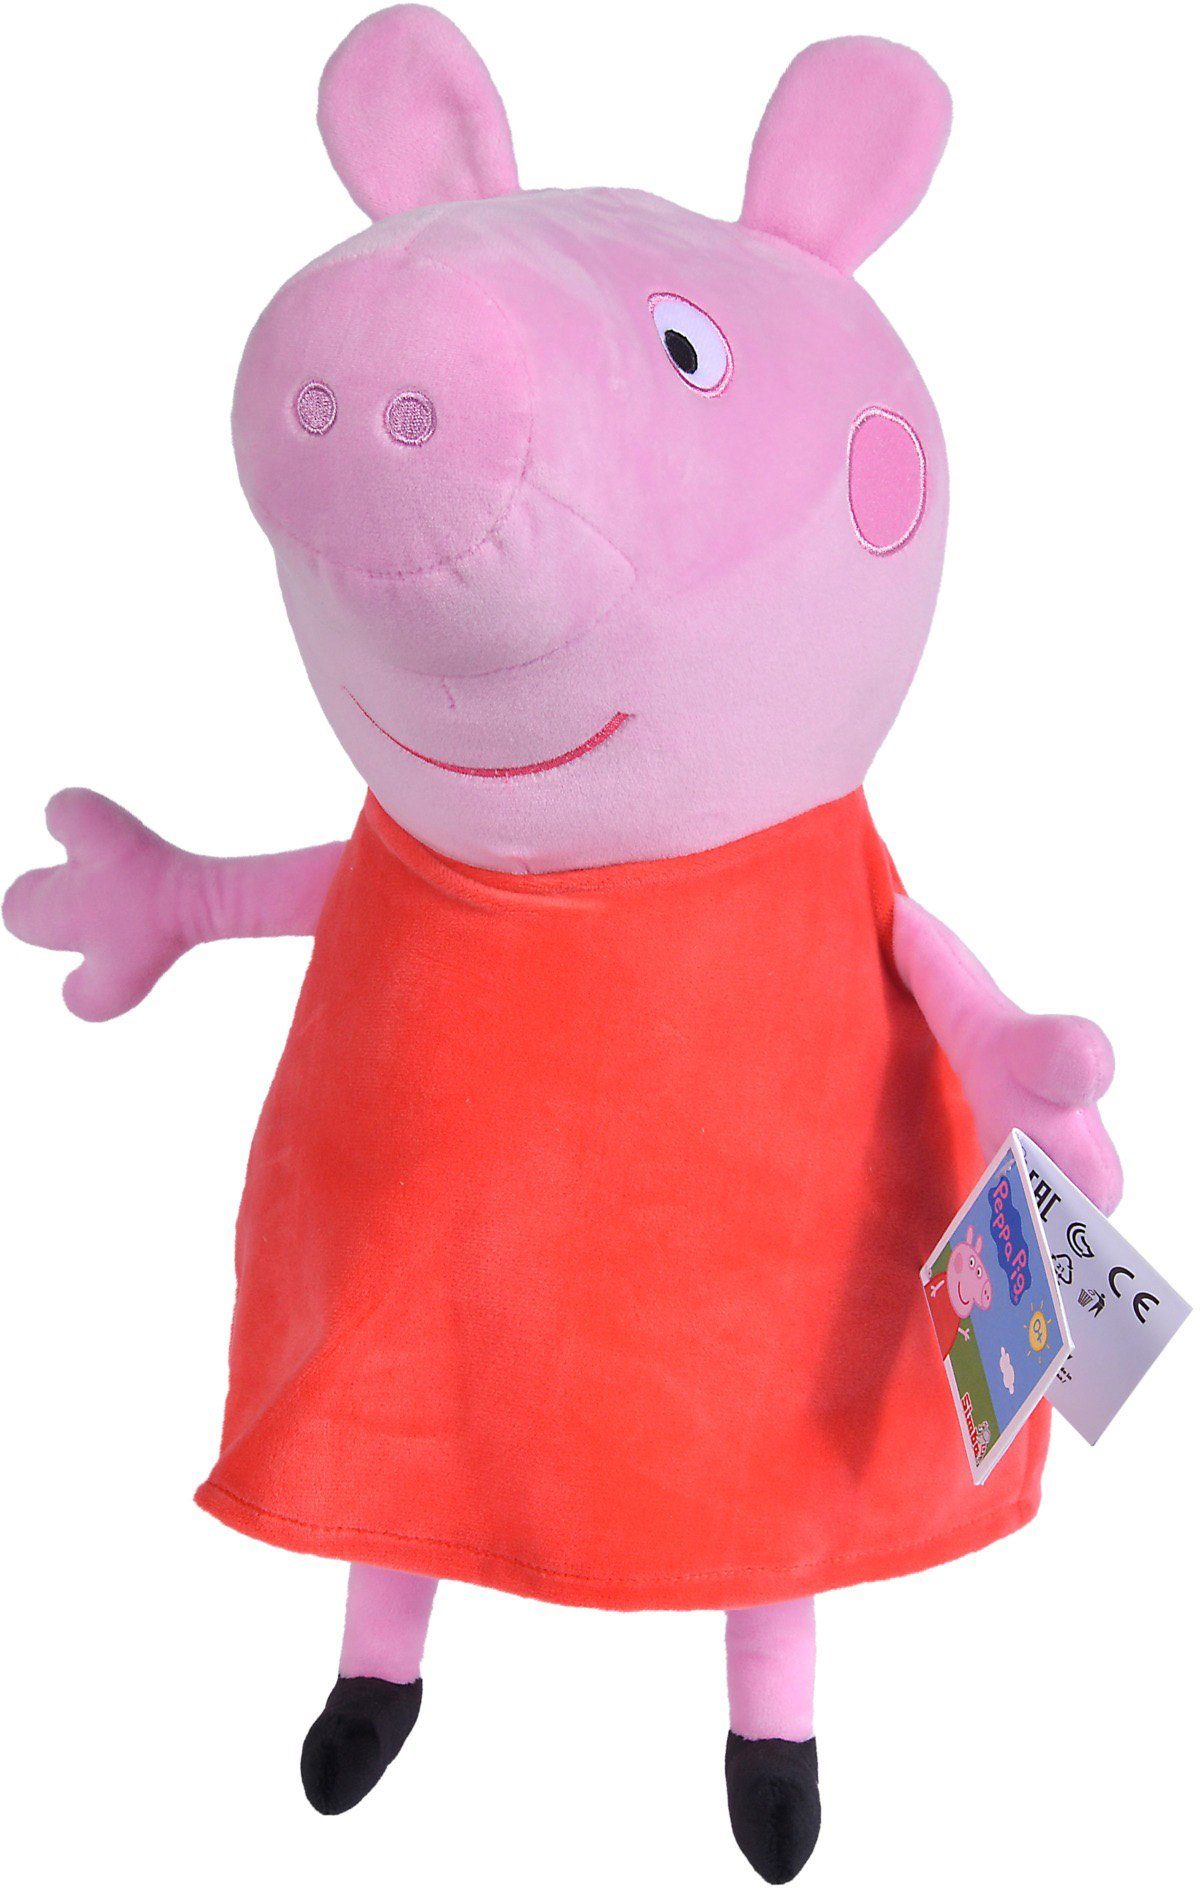 Simba Peppa Pig Plüsch Peppa Wutz Plüschtier Kuscheltier Spielzeug Kinder 33 cm 